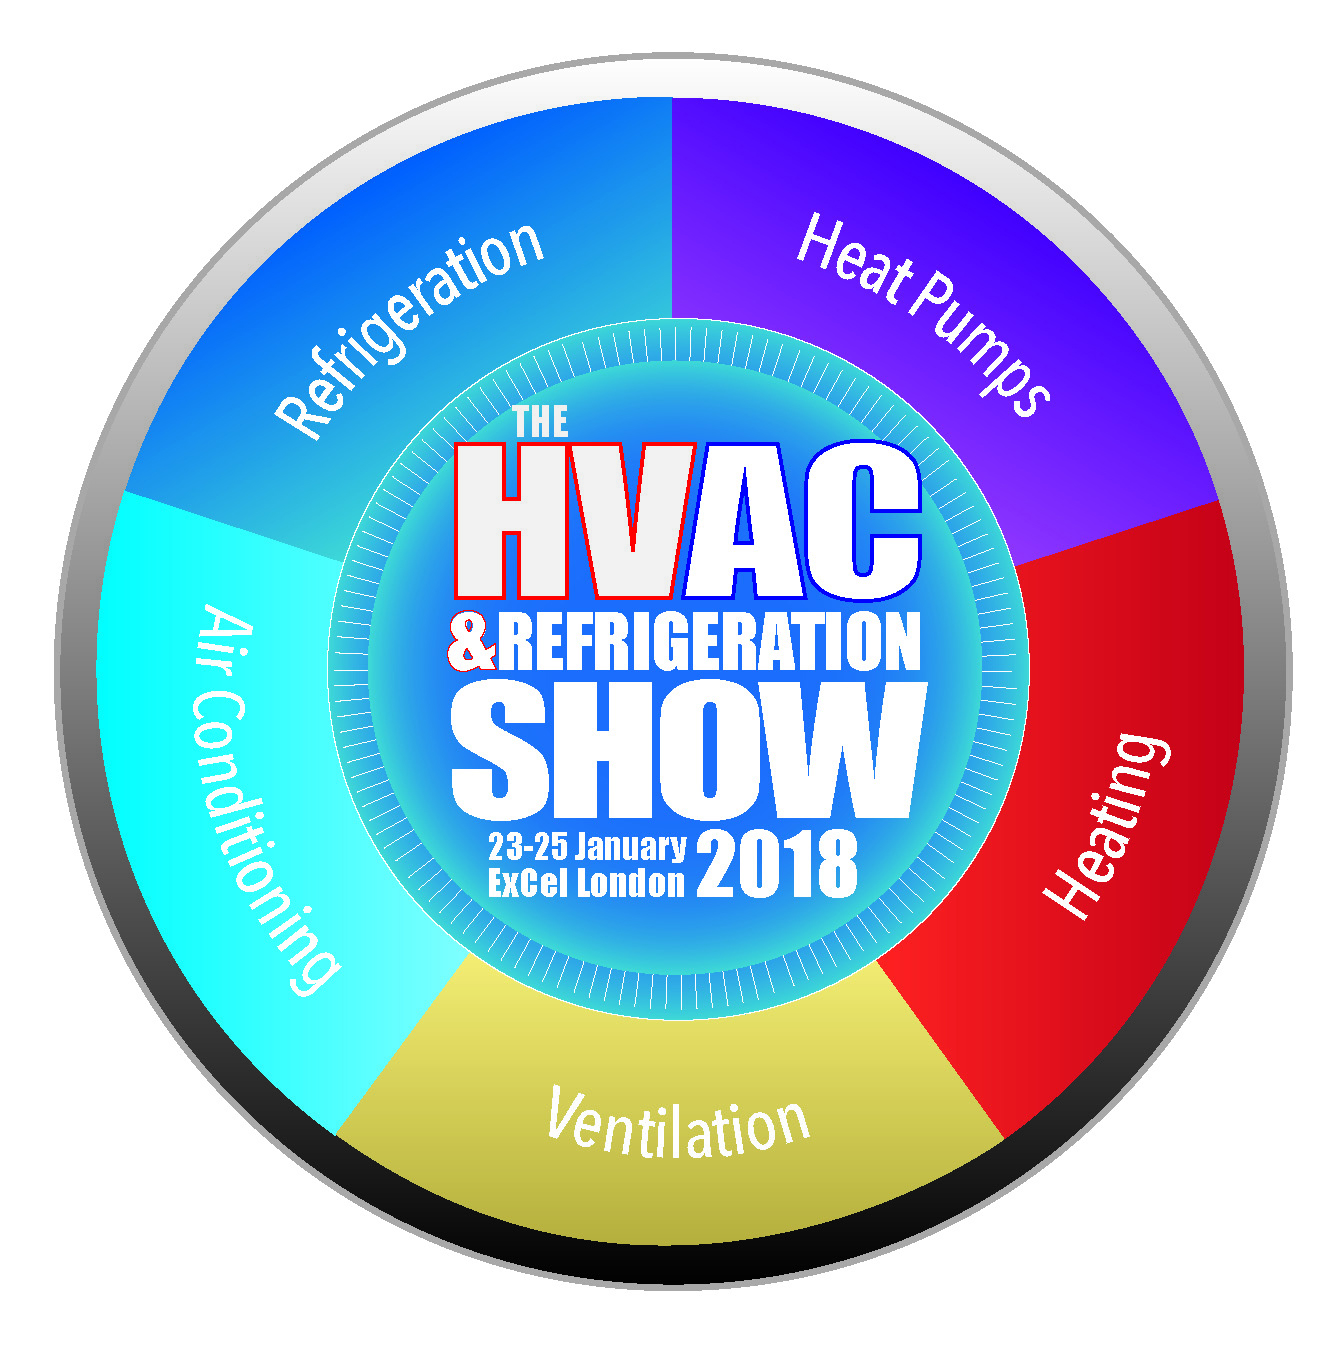 Destination London for all-new HVAC & Refrigeration Show 2018